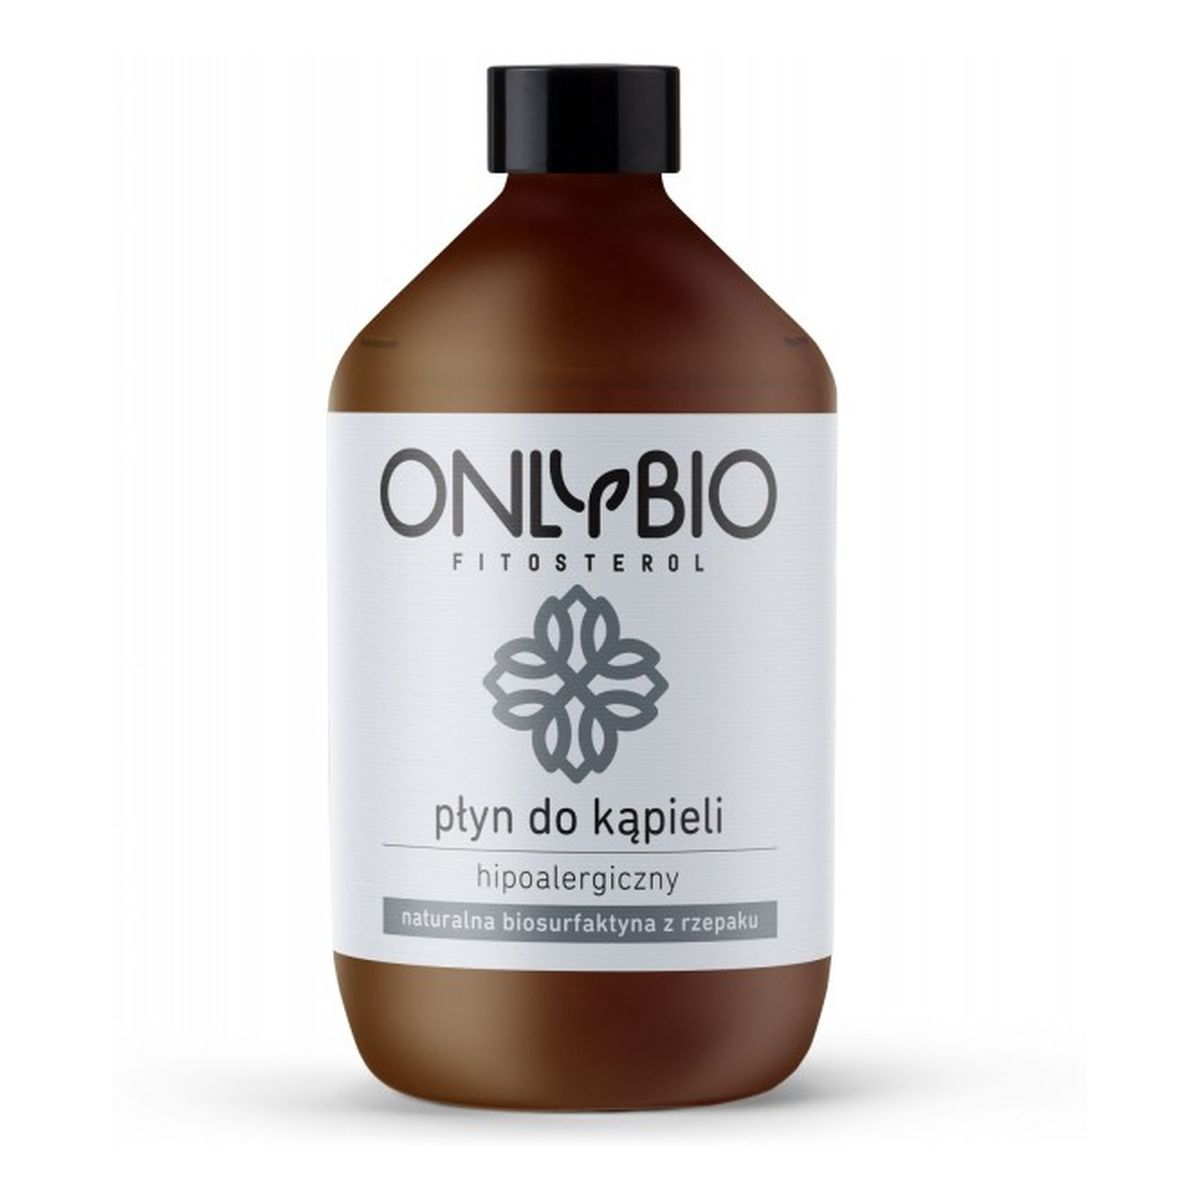 OnlyBio Fitosterol hipoalergiczny płyn do kąpieli z olejem z rzepaku 500ml